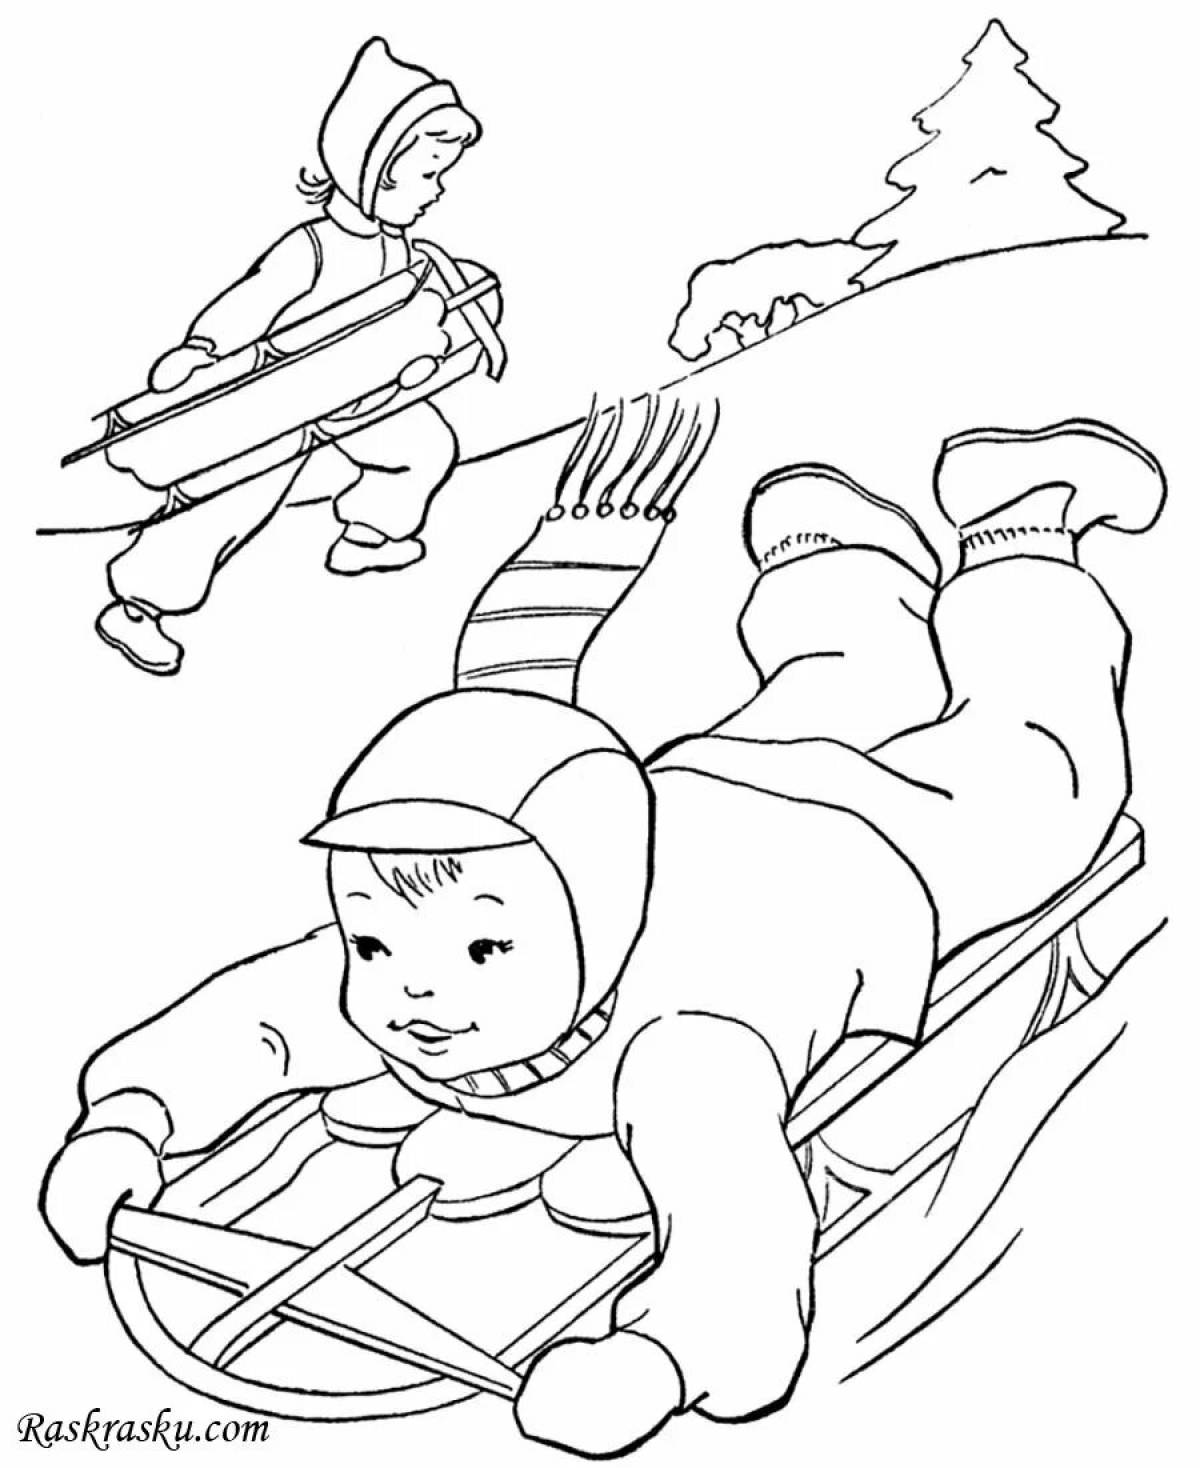 Children sledding down slide #5